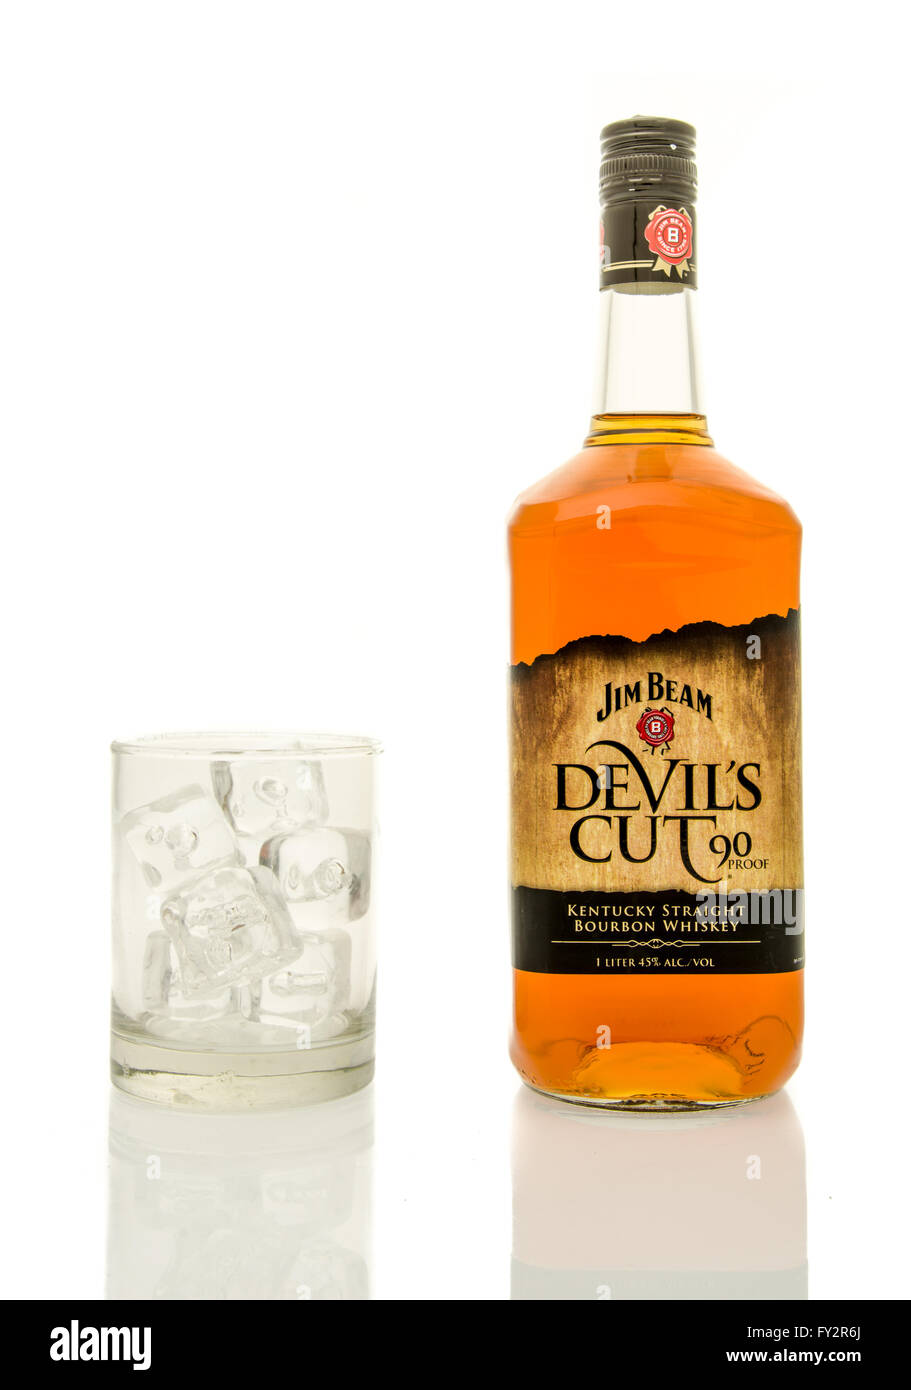 Winneconne, WI - 19 mars 2016 : une bouteille de Jim Beam Devil's cut whisky avec un verre de glace. Banque D'Images